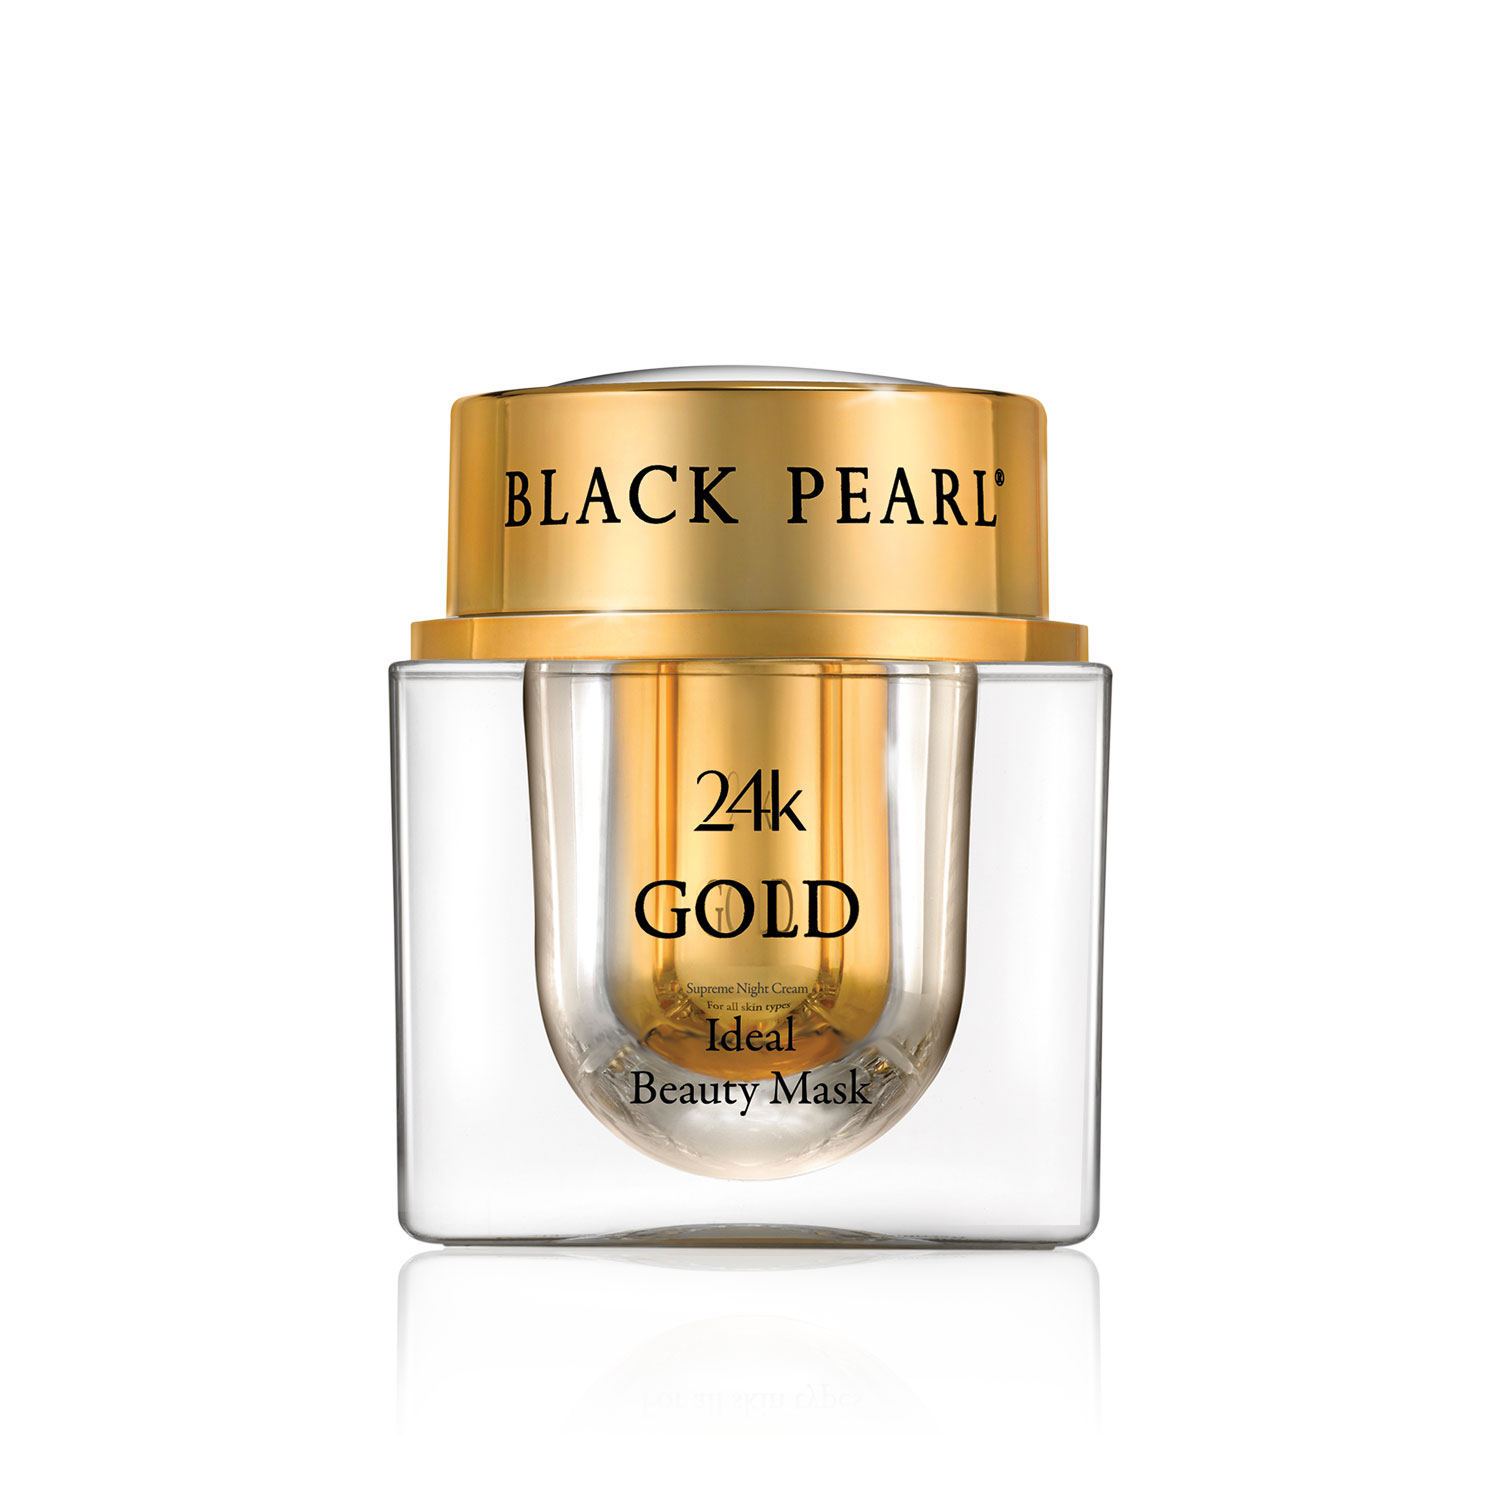 Mặt Nạ Sắc Đẹp Hoàn Mỹ Vàng 24K Black Pearl - 24k Gold Ideal Beauty Mask -  Có Nguồn Gốc Từ Biển Chết - Xuất Xứ Israel - Cung Cấp Một Giải Pháp Hoàn Chỉnh Cho Sự Săn Chắc Và Độ Đàn Hồi Của Da